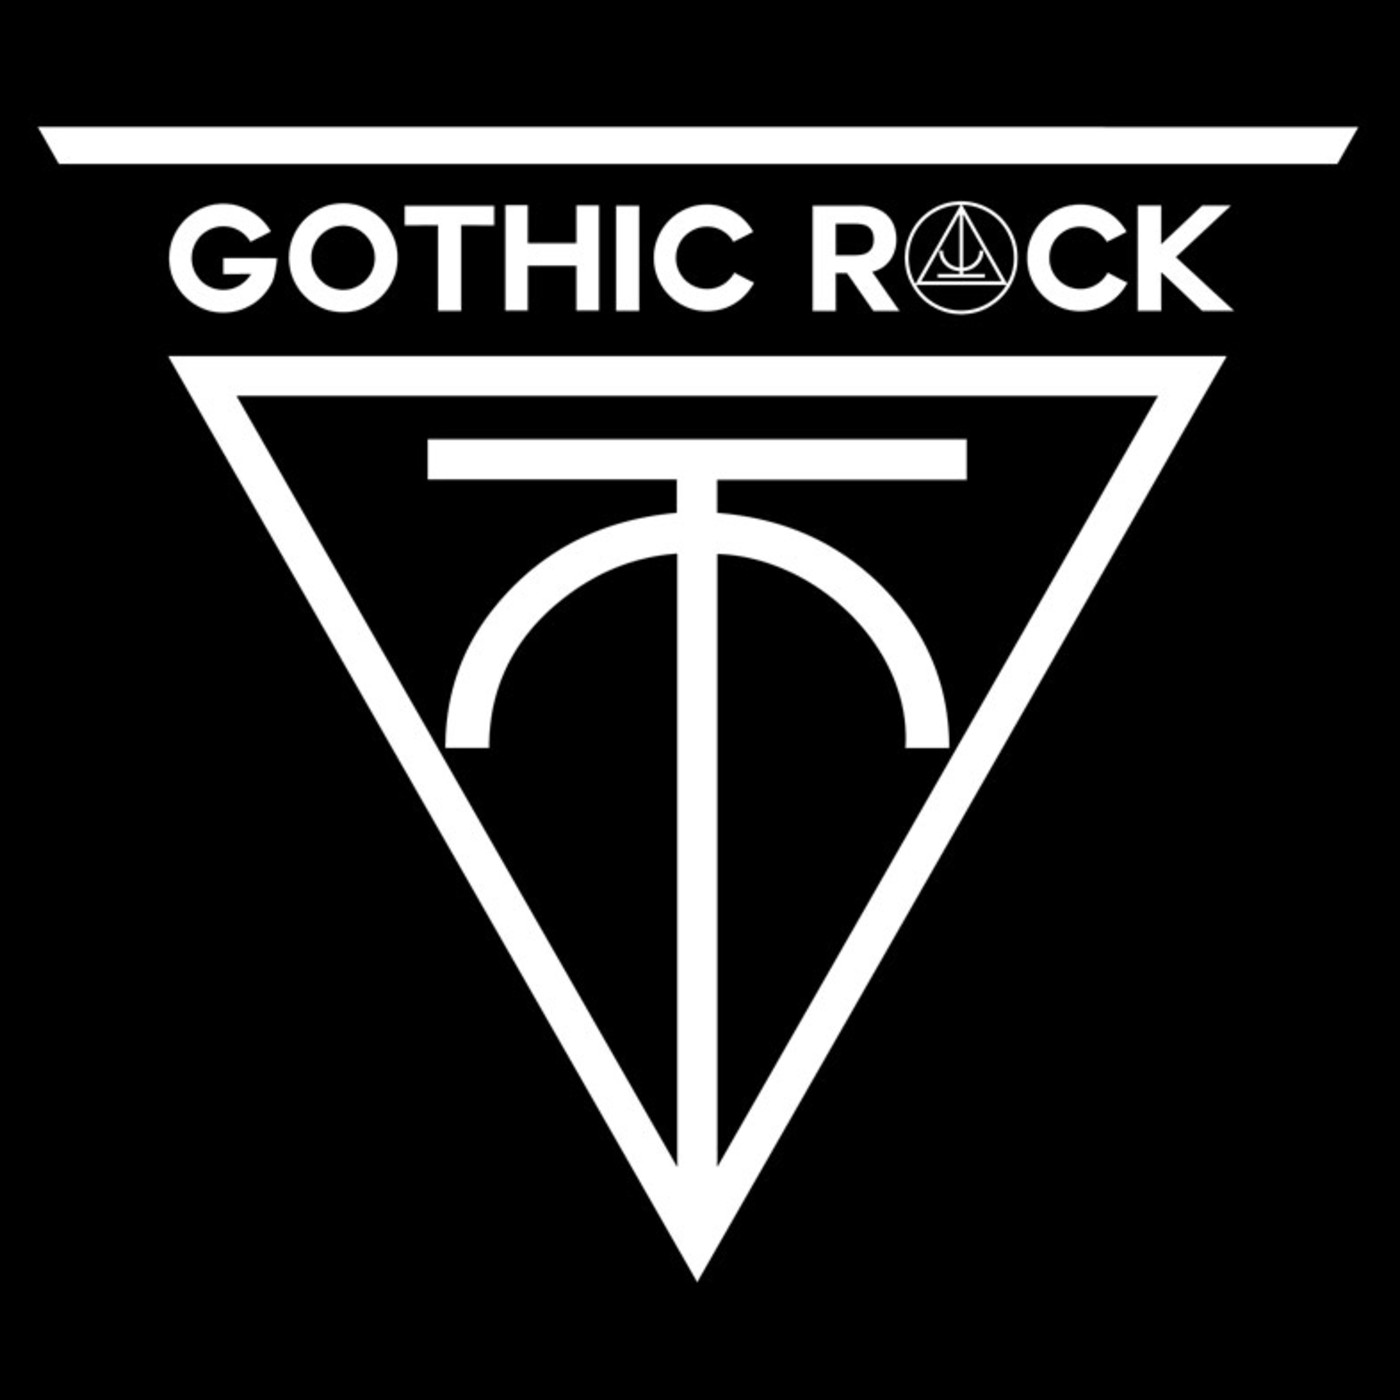 Esto es rock gÓtico 06 (24-12-17)